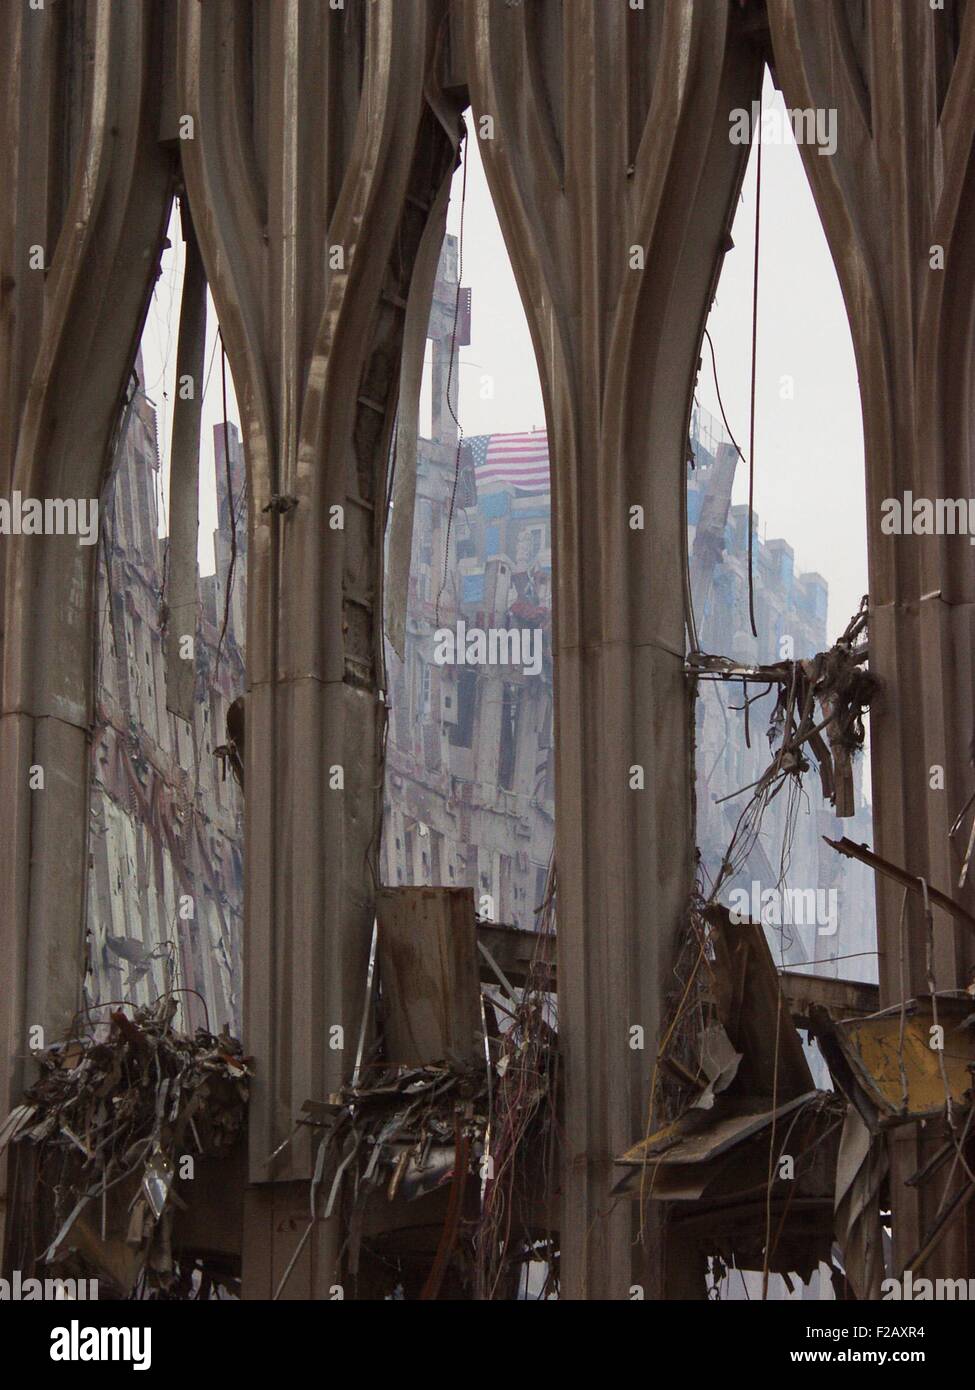 Fragmento de la fachada del WTC 1, la Torre Sur de la fachada sobre el 21 de septiembre de 2001. A través del arco central una bandera puede verse dañada en la New York Telephone (ahora Verizon) Edificio. World Trade Center, en Nueva York, después del 11 de septiembre de 2001 ataques terroristas. (BSLOC 2015 2 102) Foto de stock